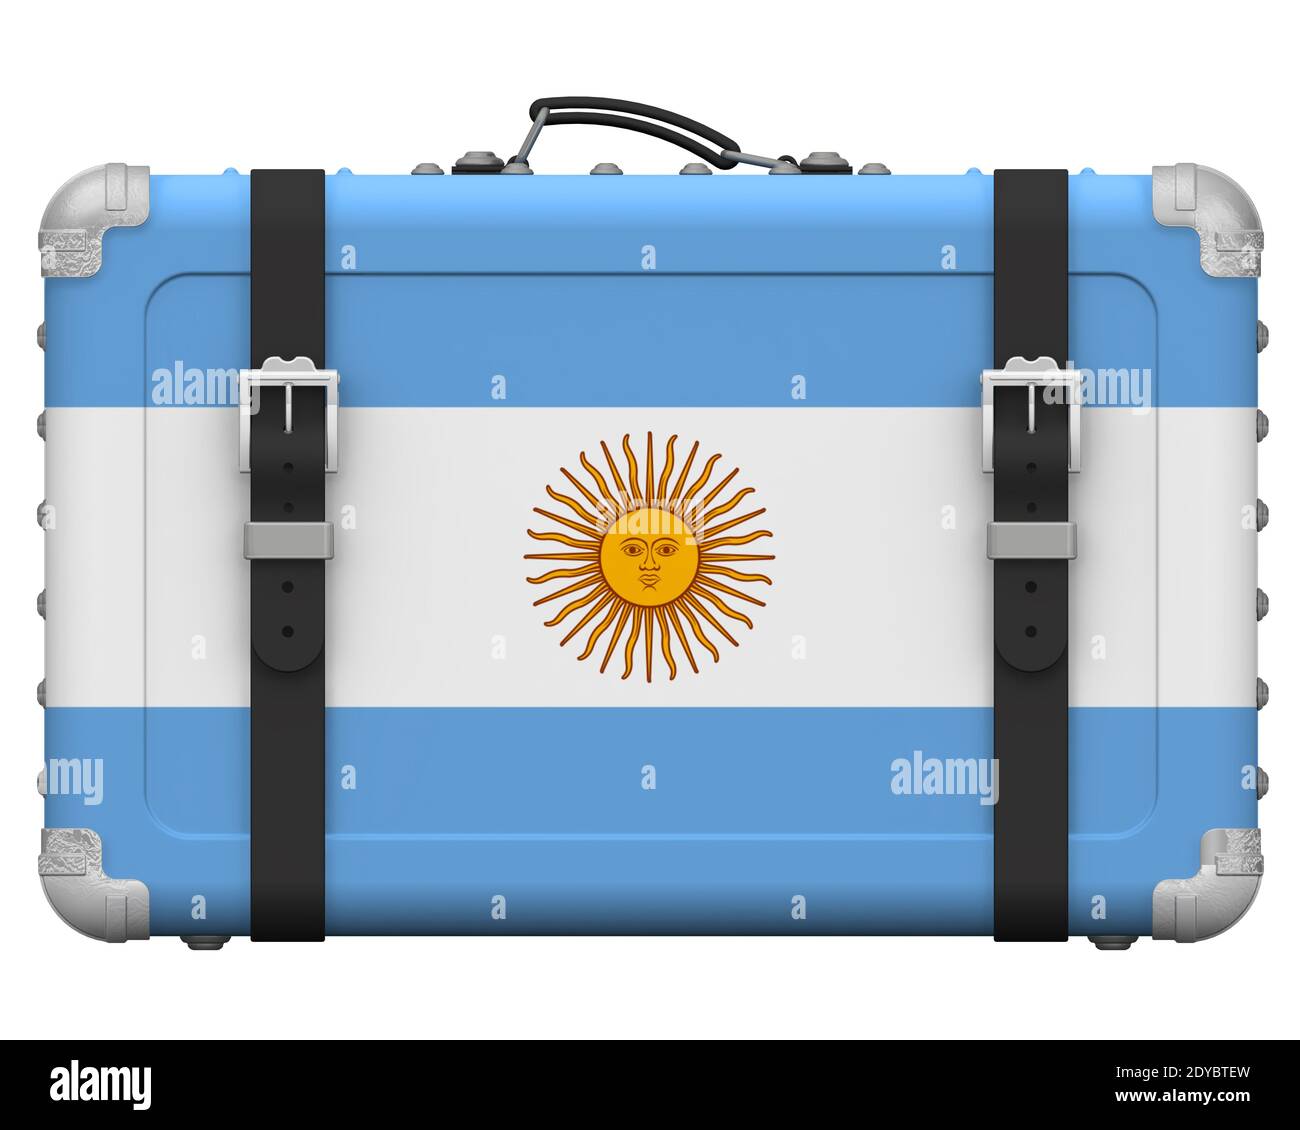 Stilvoller Koffer mit der Nationalflagge Argentiniens. Retro Koffer mit der Nationalflagge der Argentinischen Republik steht auf einer weißen Fläche Stockfoto